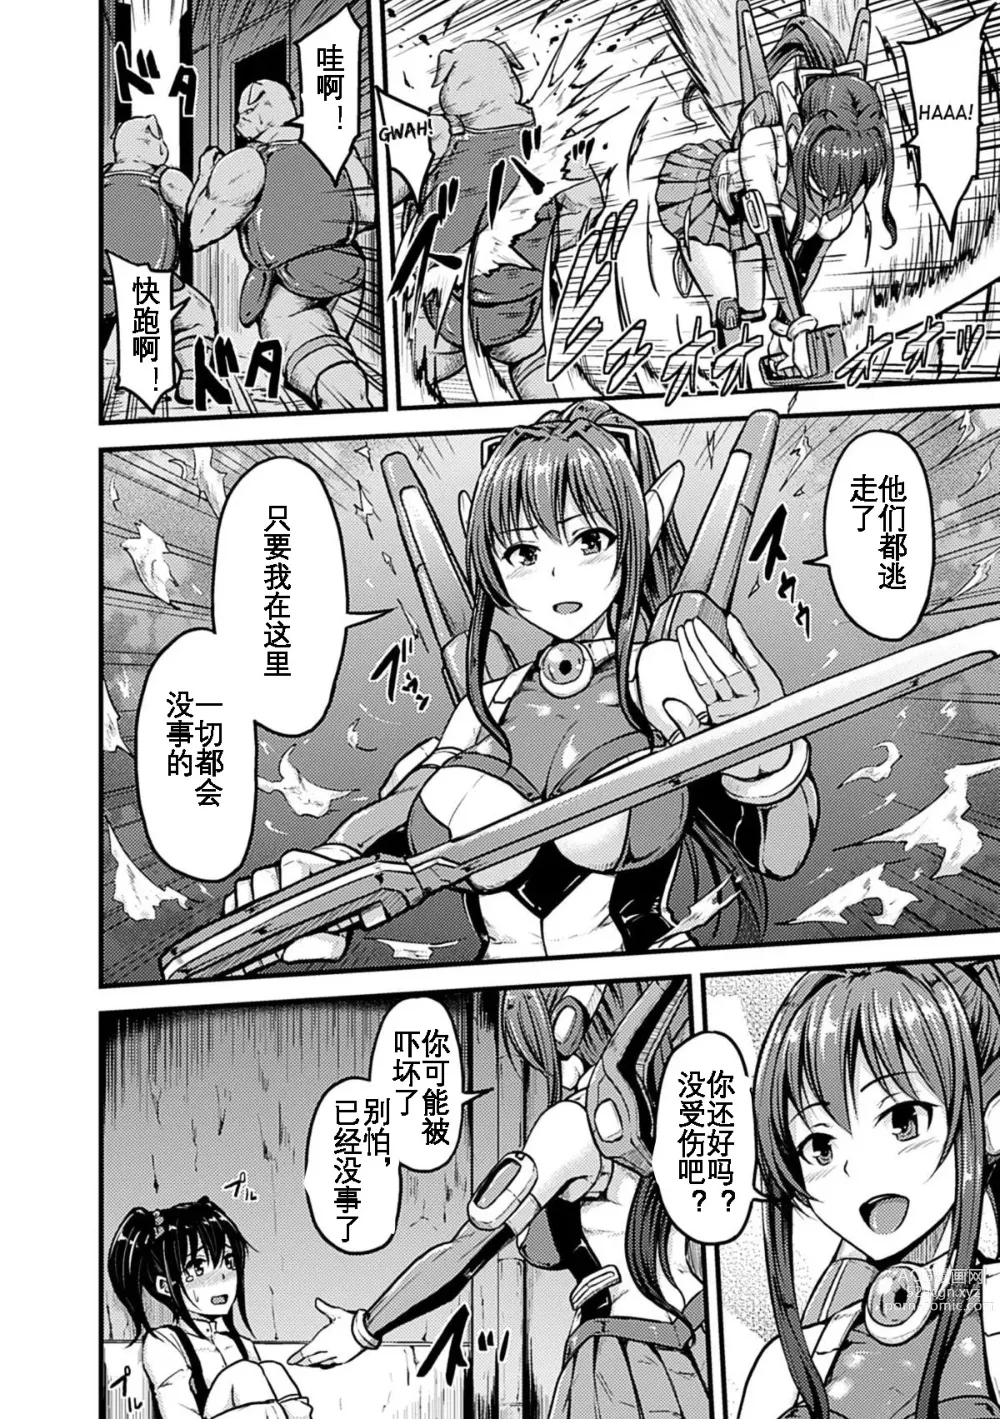 Page 3 of manga Irisraker Buta no Ko o Haramu Seigi no Senshi